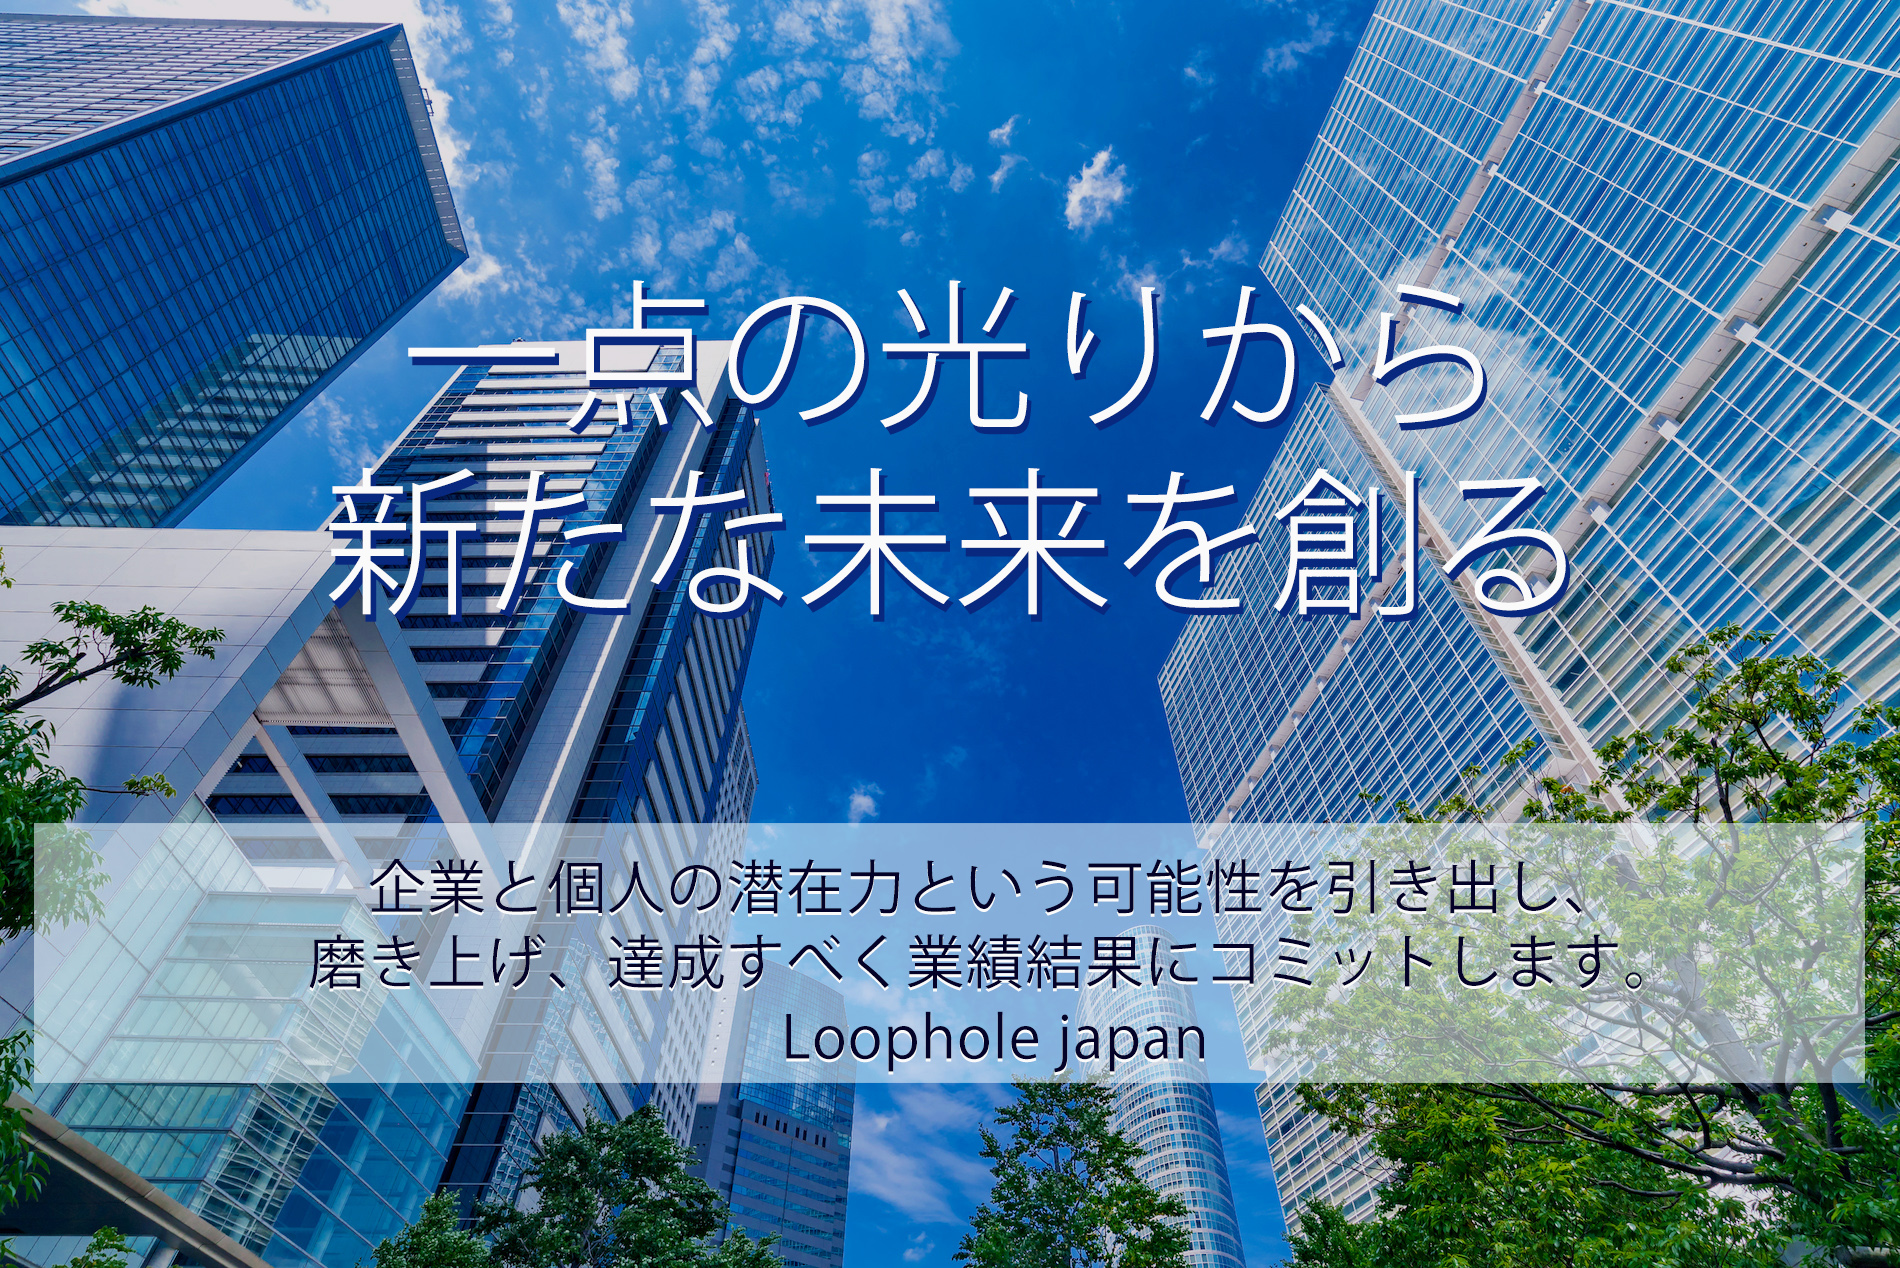 「一点の光から新たな未来を創る」は（株）Loophole japanの事業ポリシーです。